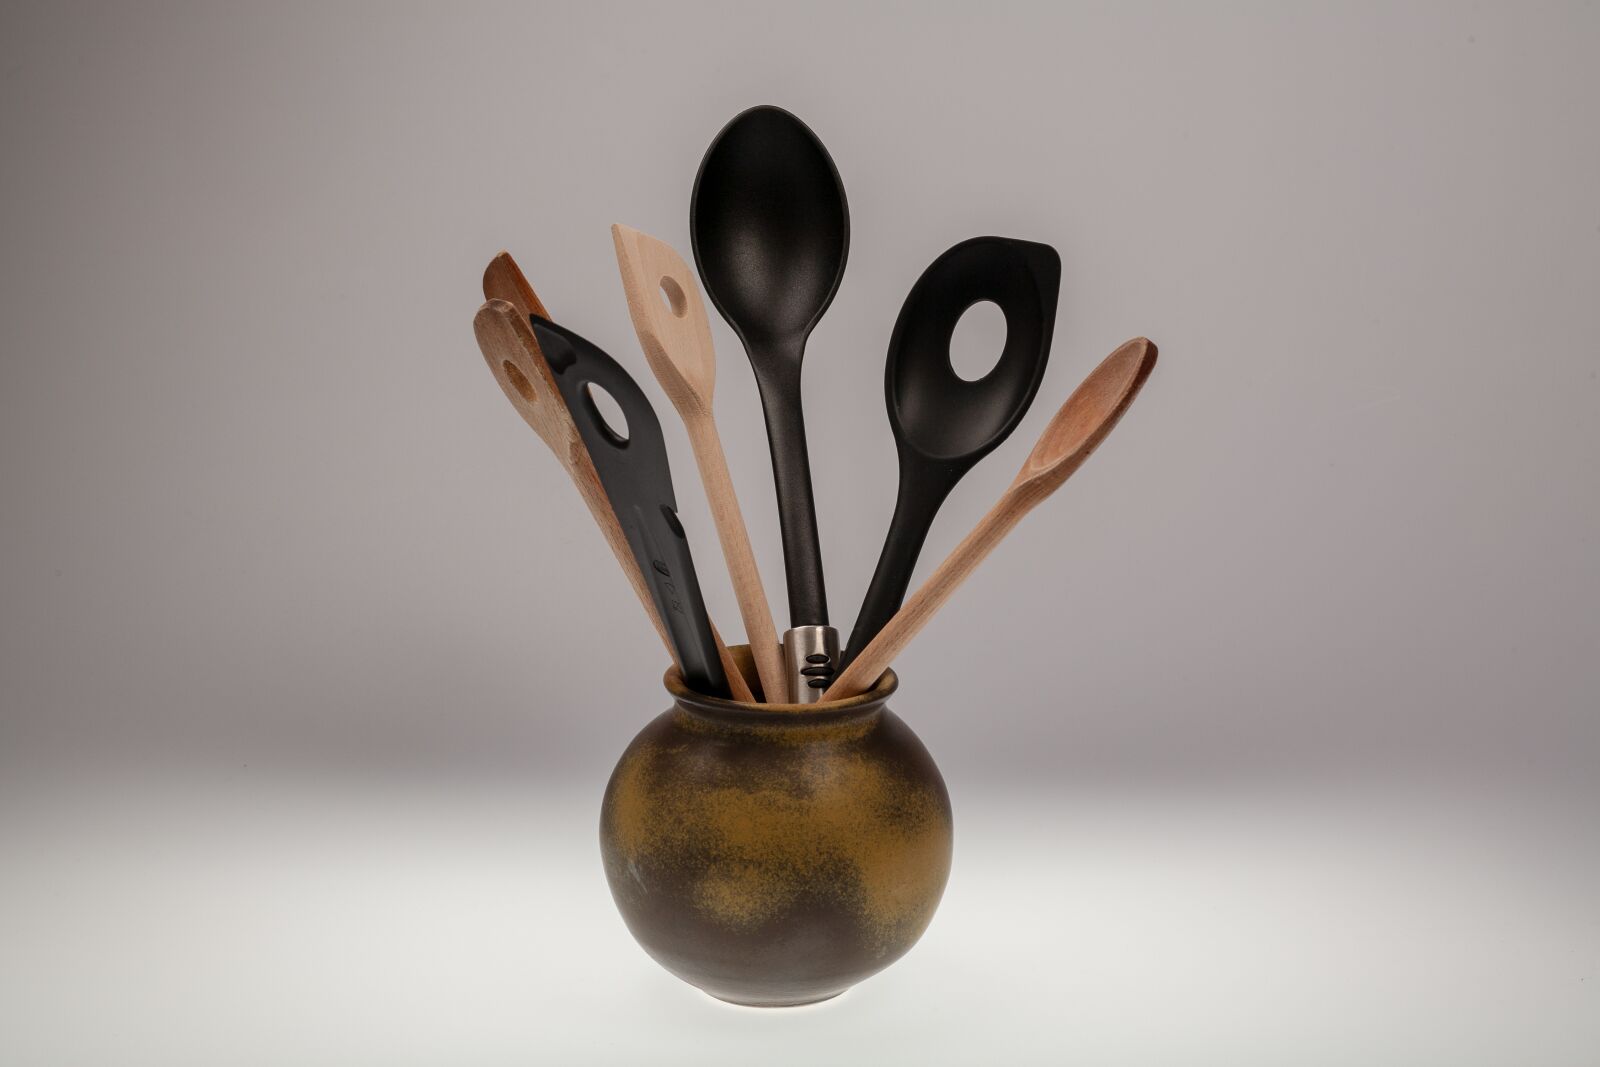 Canon EOS 5D sample photo. Wooden spoon, pot, spoon photography